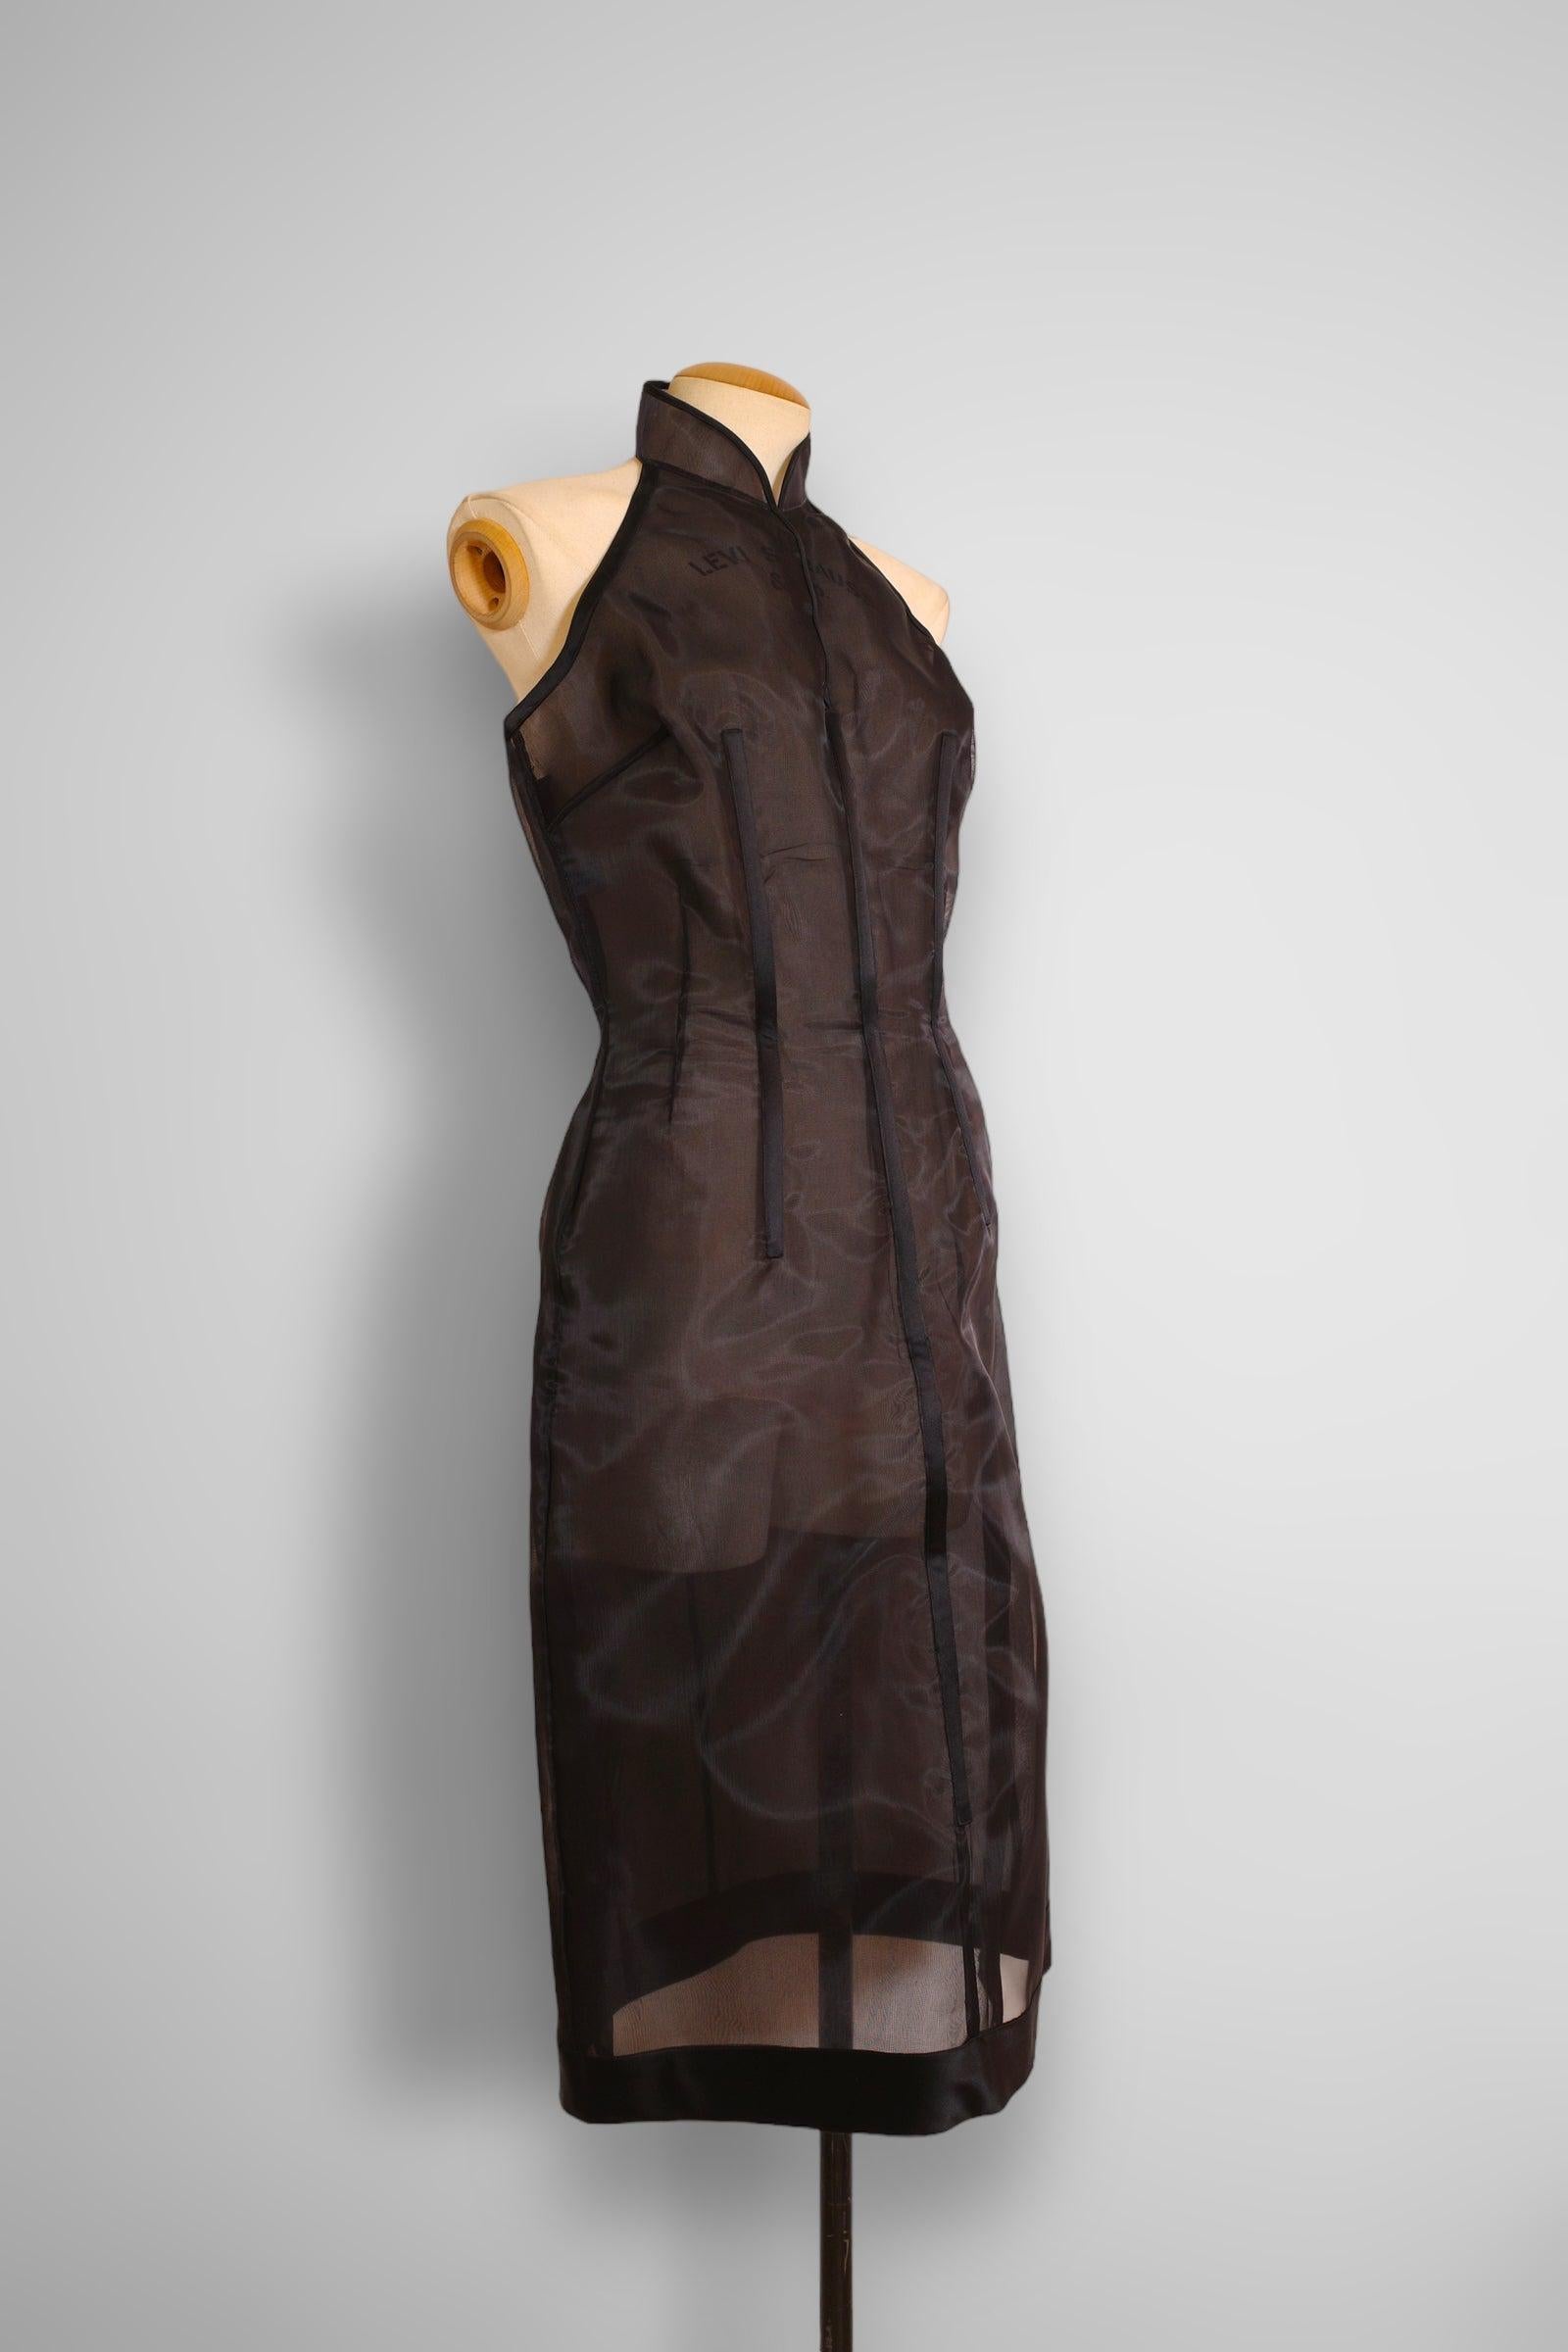 Vintage Prada 1995 Laufstegkollektion durchsichtiges Neckholderkleid. Das Kleid ist aus Nylon gefertigt und rundherum komplett mit Stäbchen versehen. 

Größe 44, (L)

Zustand: 8/10, sehr guter gebrauchter Zustand, Rückenknochen sind leicht